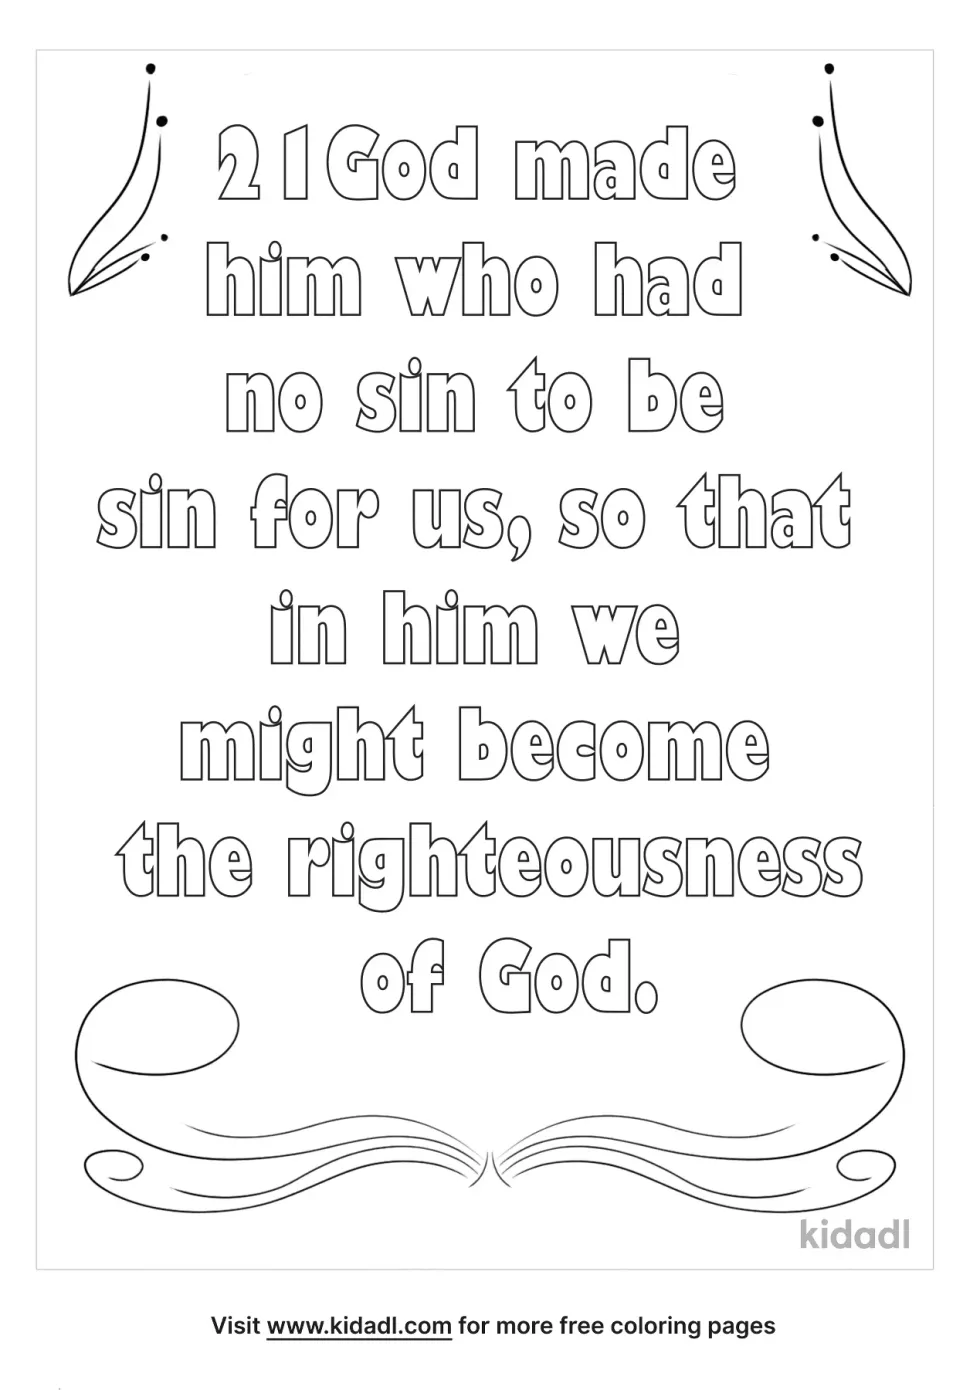 2 Corinthians 5:21 Coloring Page